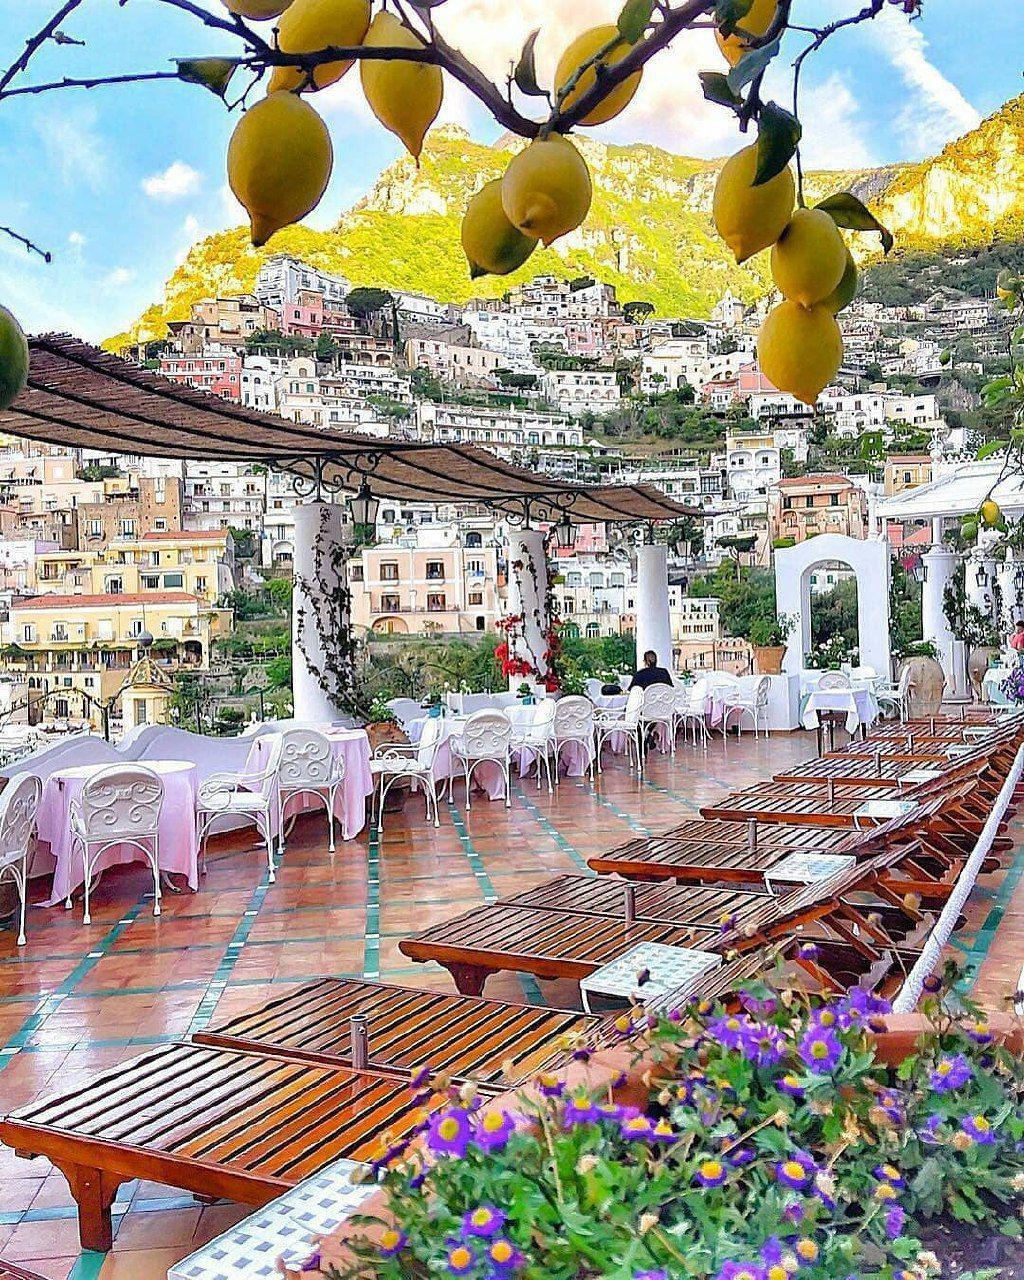 منظره زیبا از شهر زیبای پوریتانو در ایتالیا..  چشم نواز و رویایی.. **abdolla**